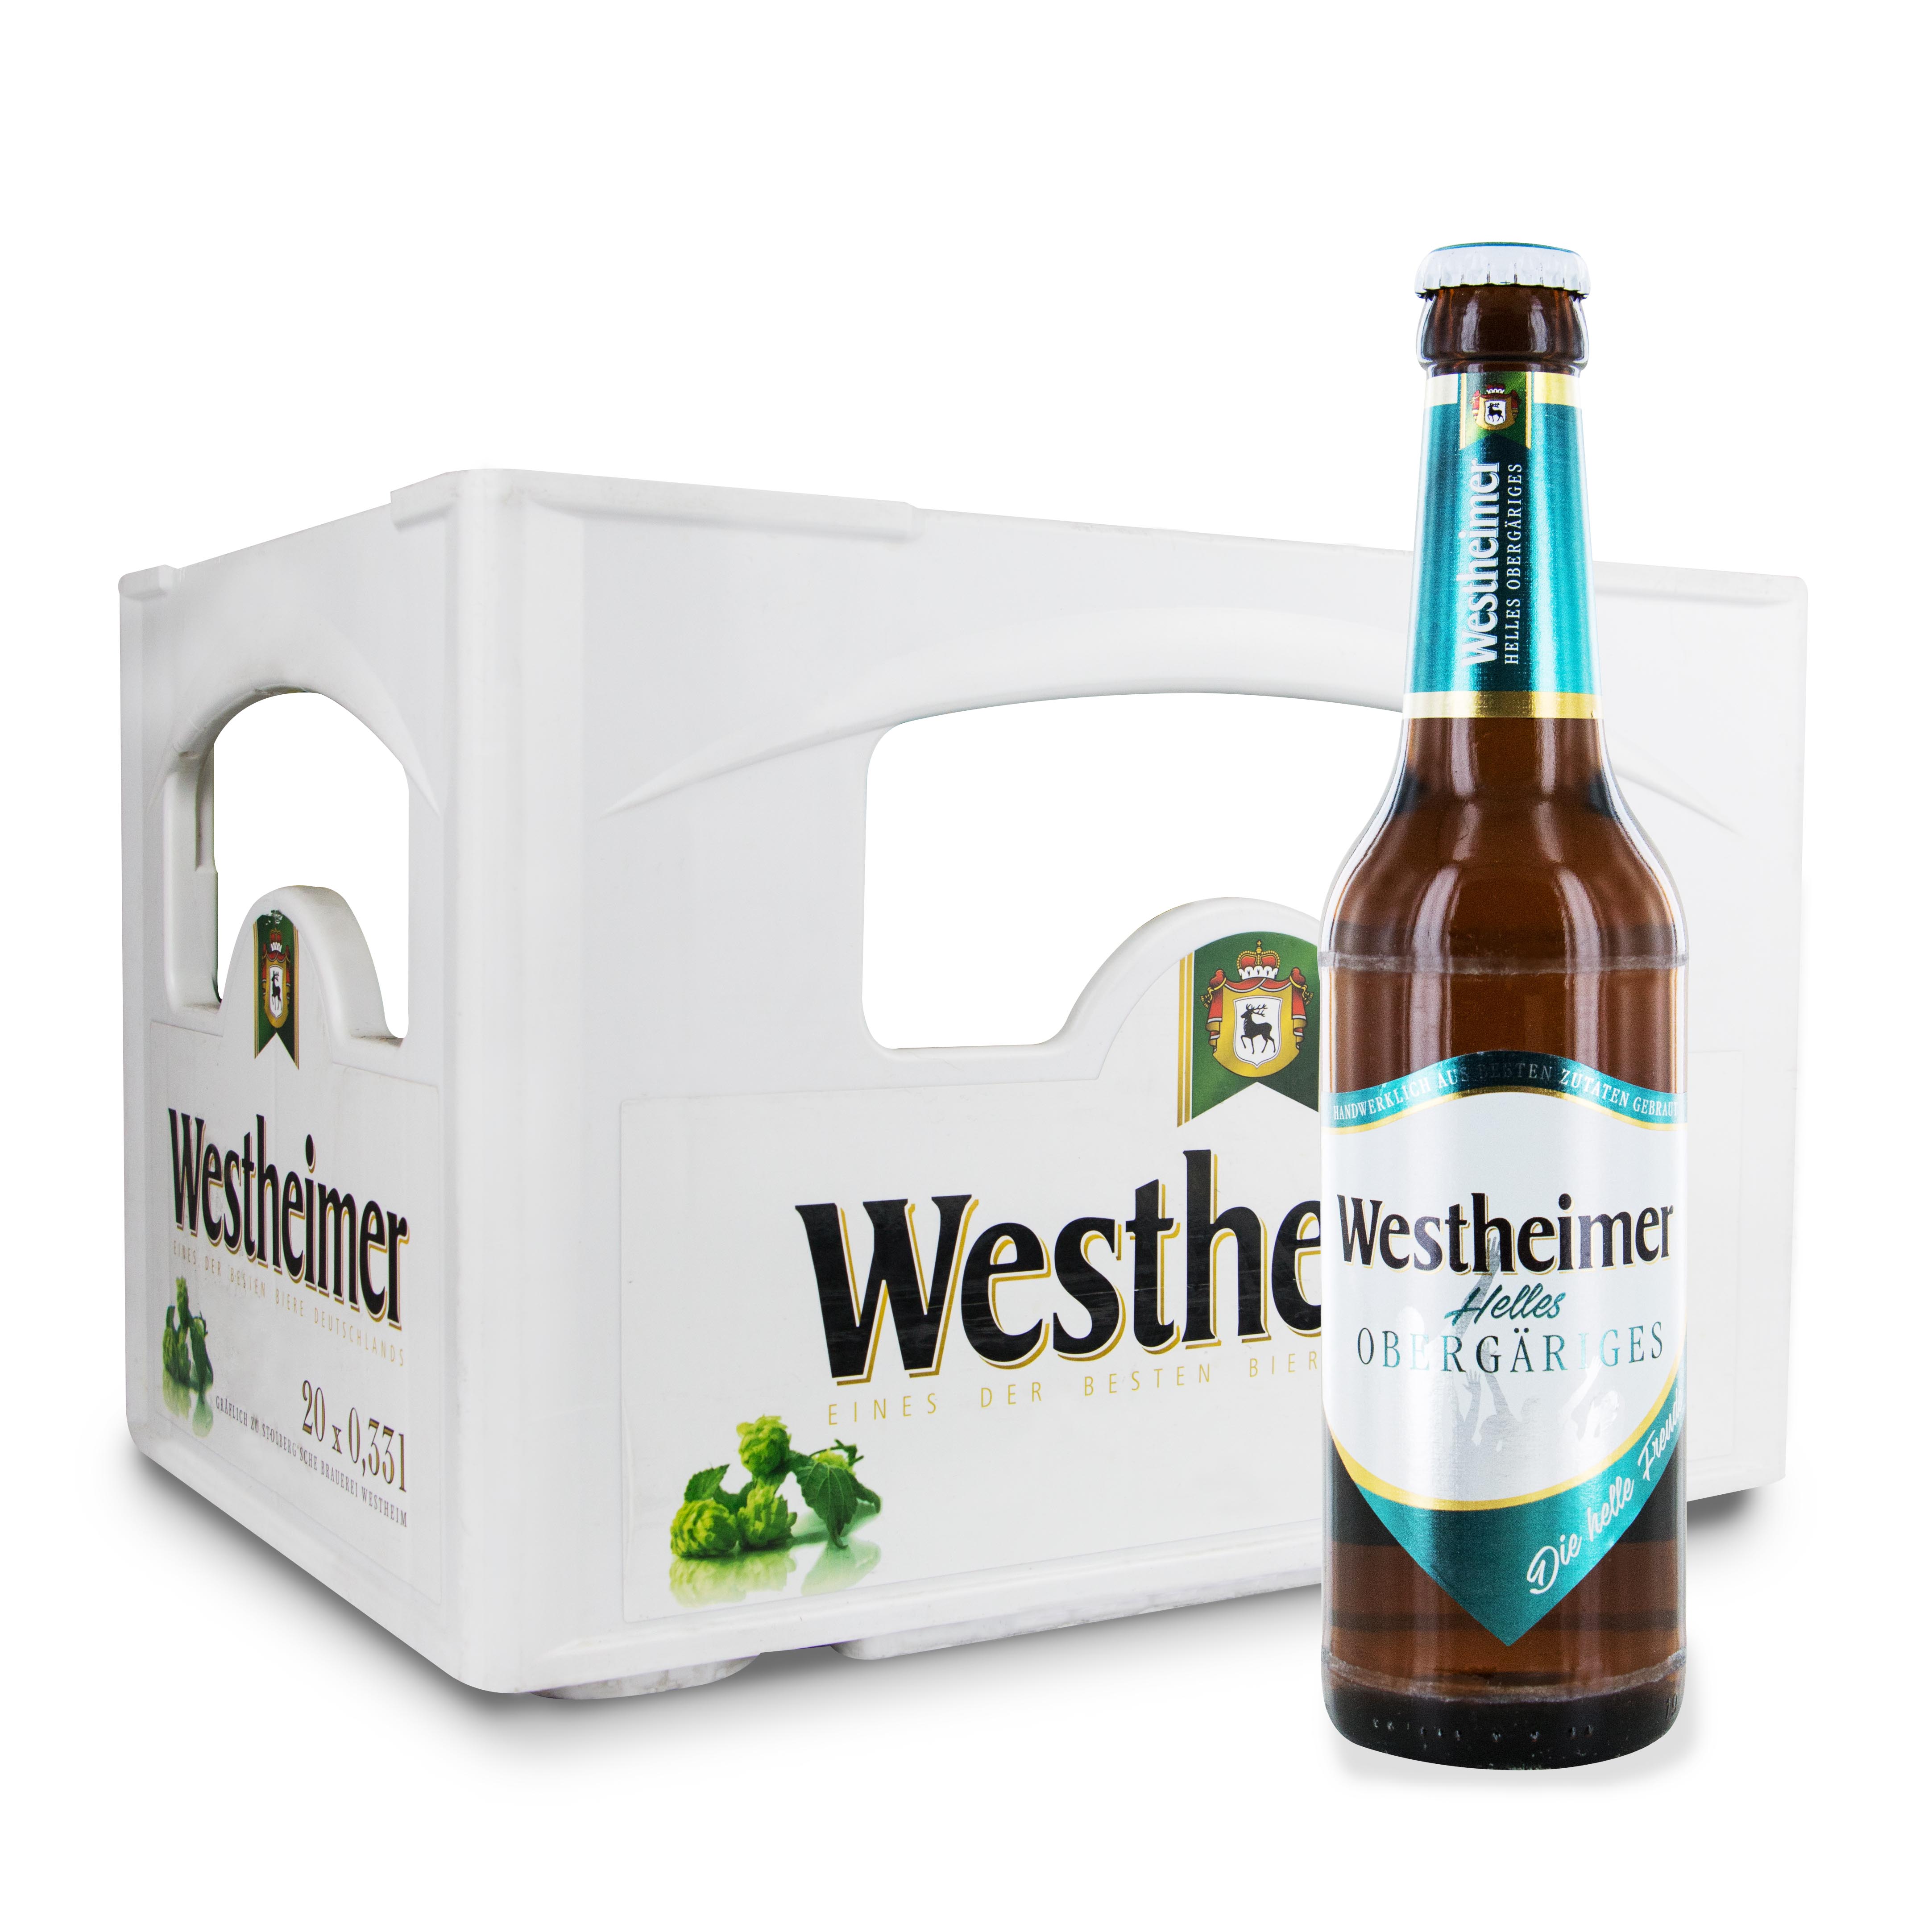 Westheimer helles Obergäriges Bier in der Kiste-zoom